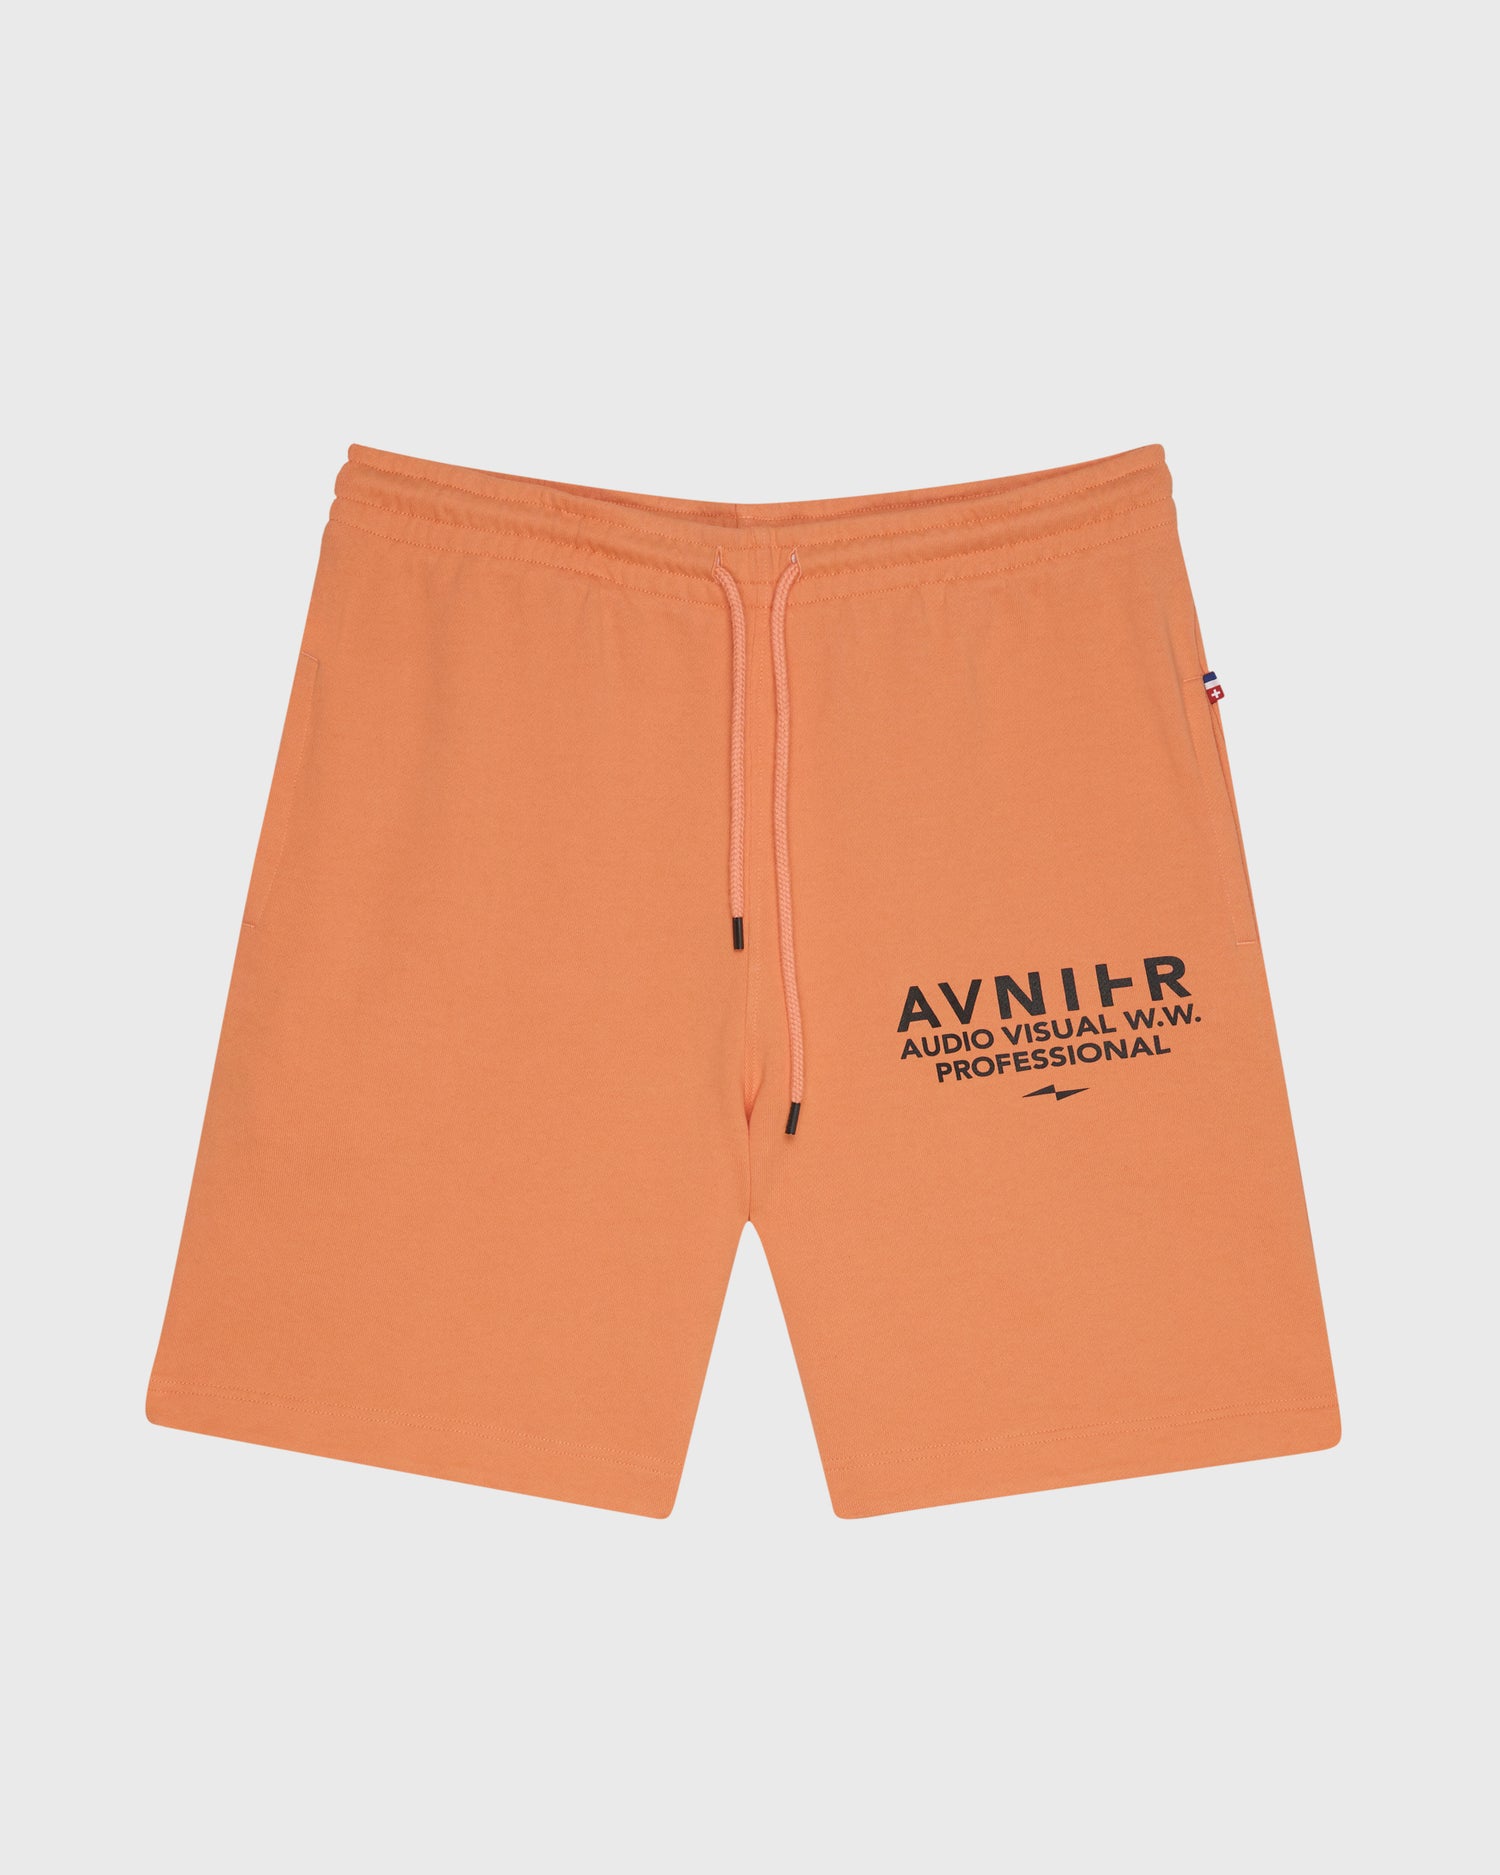 short-break-orange-avnier-durable-1-packshot-face - orange vibrant